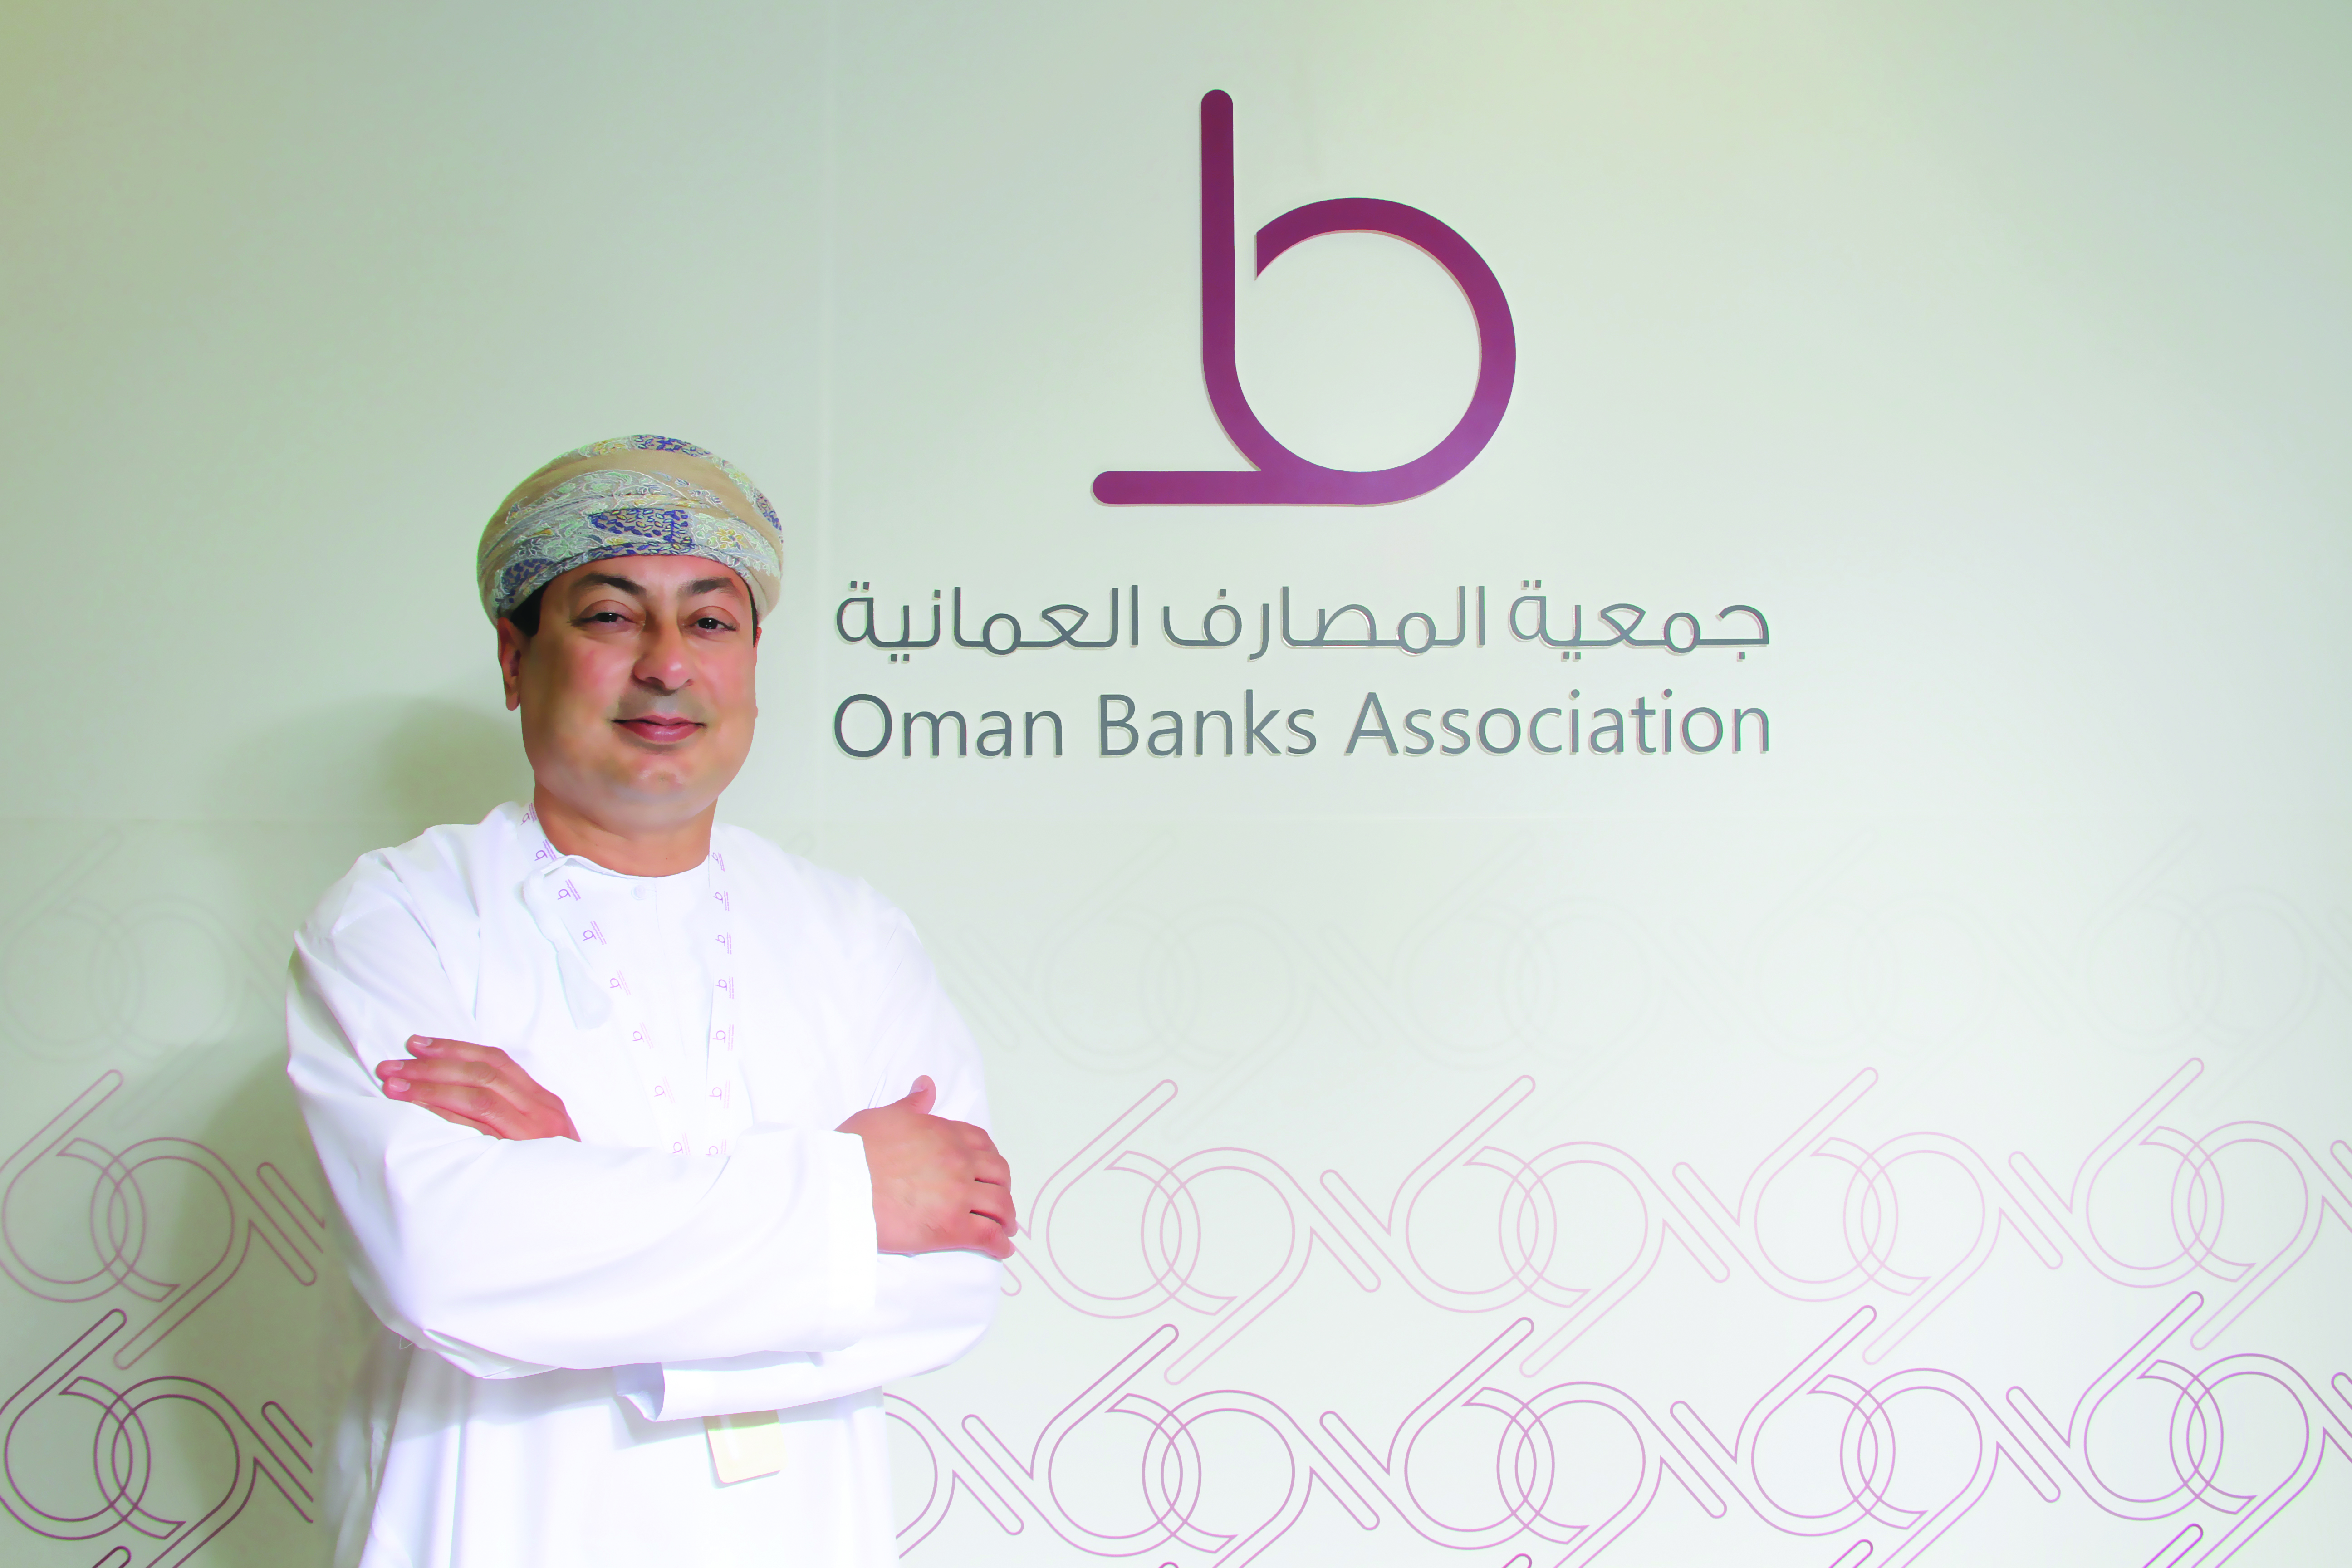 علي بن حسن بن موسى رئيساً تنفيذياً لجمعية المصارف العمانية